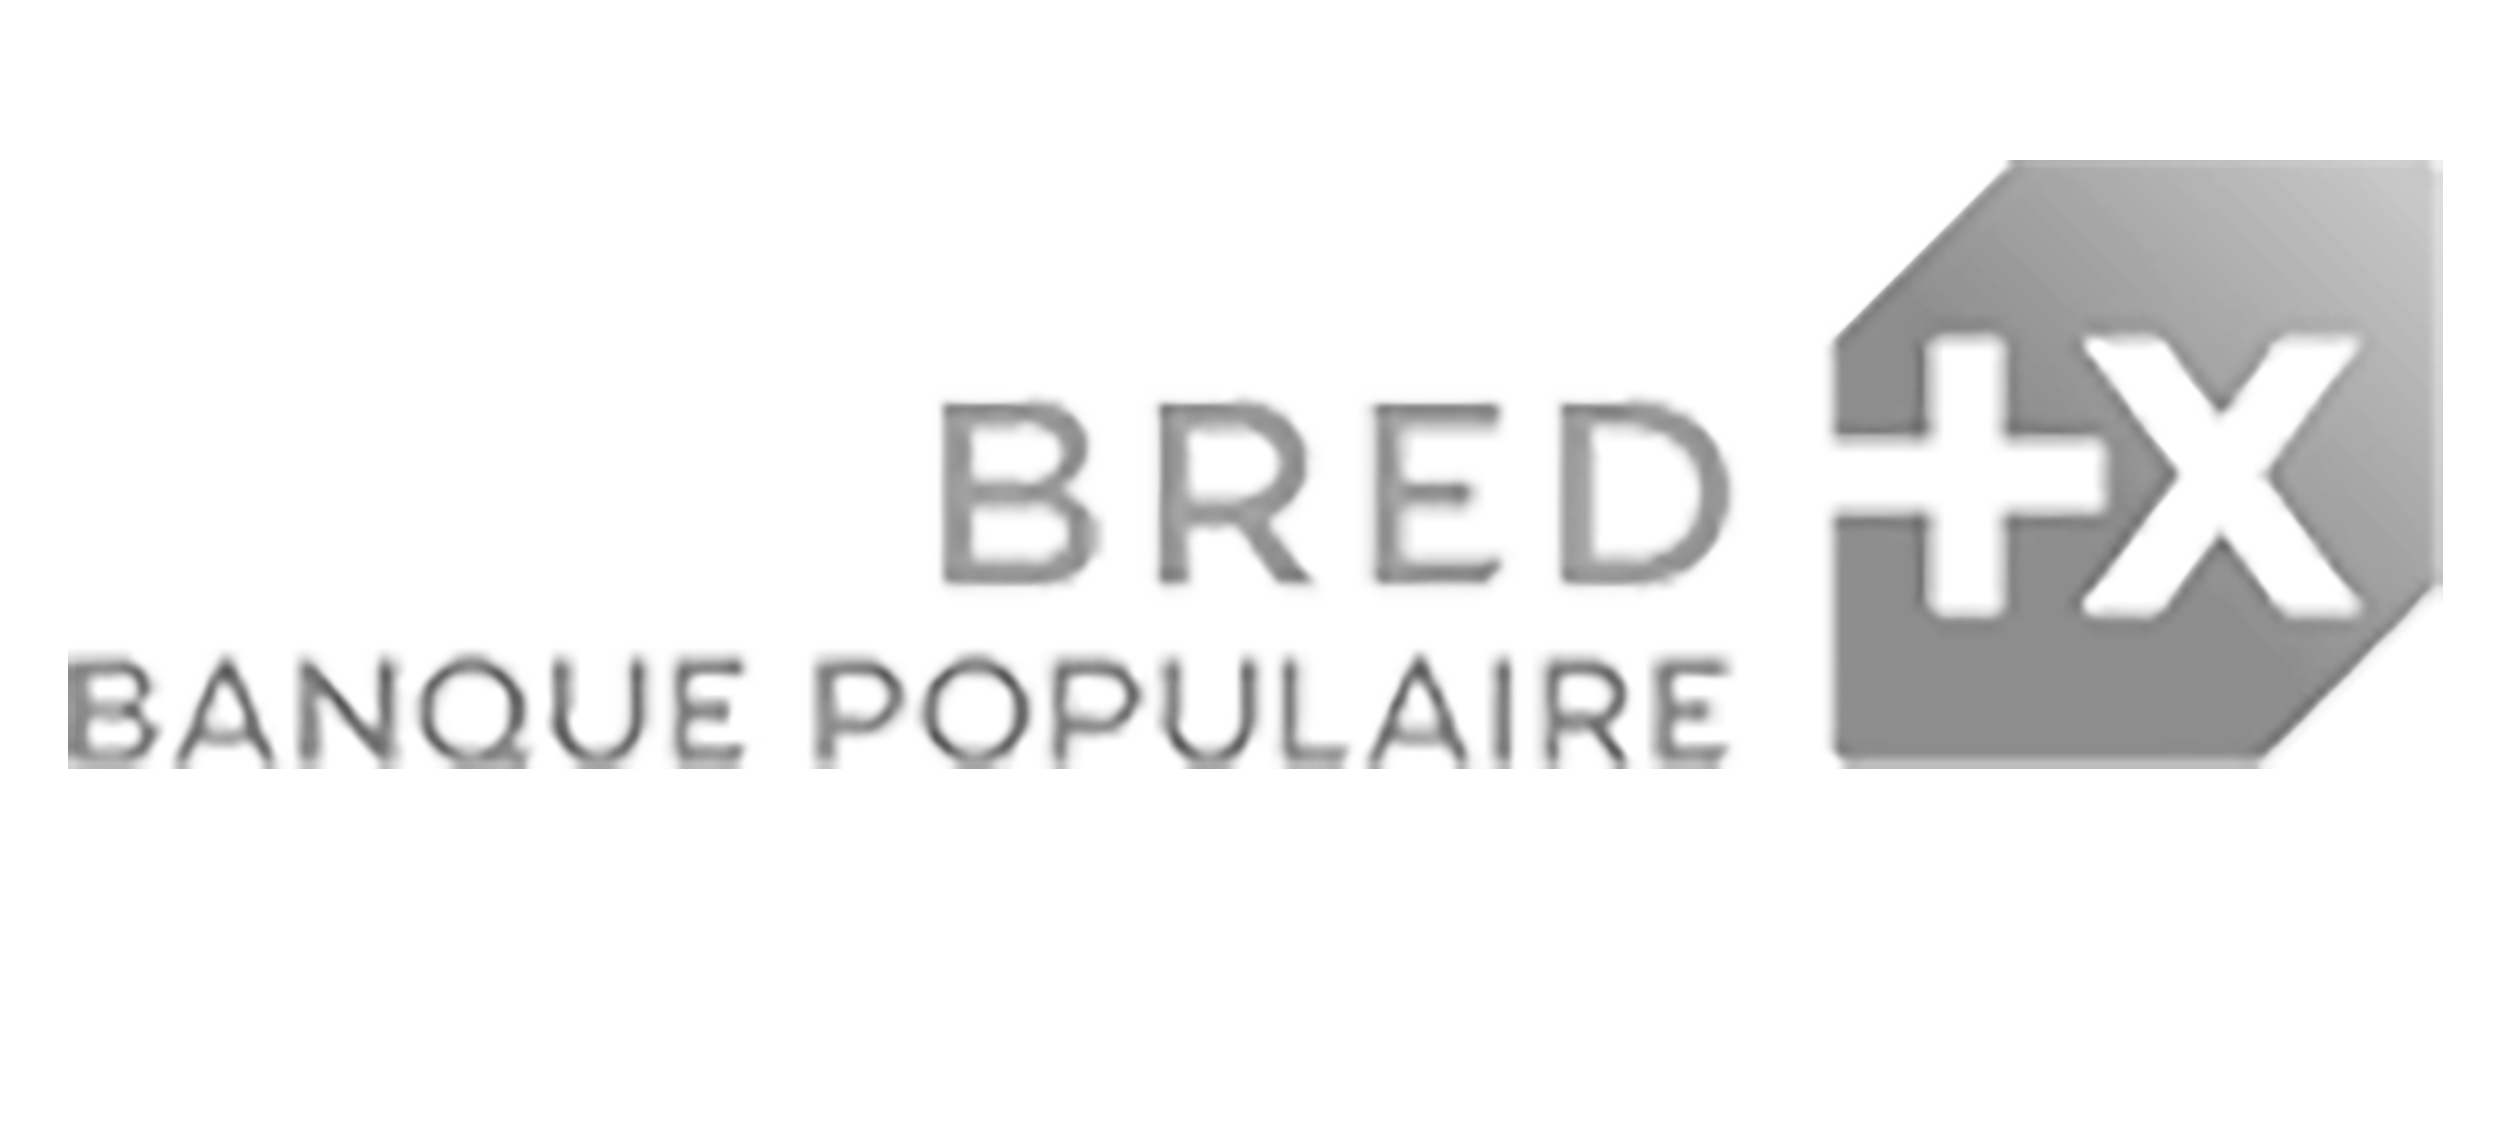 Logo de la Bred Banque Populaire.